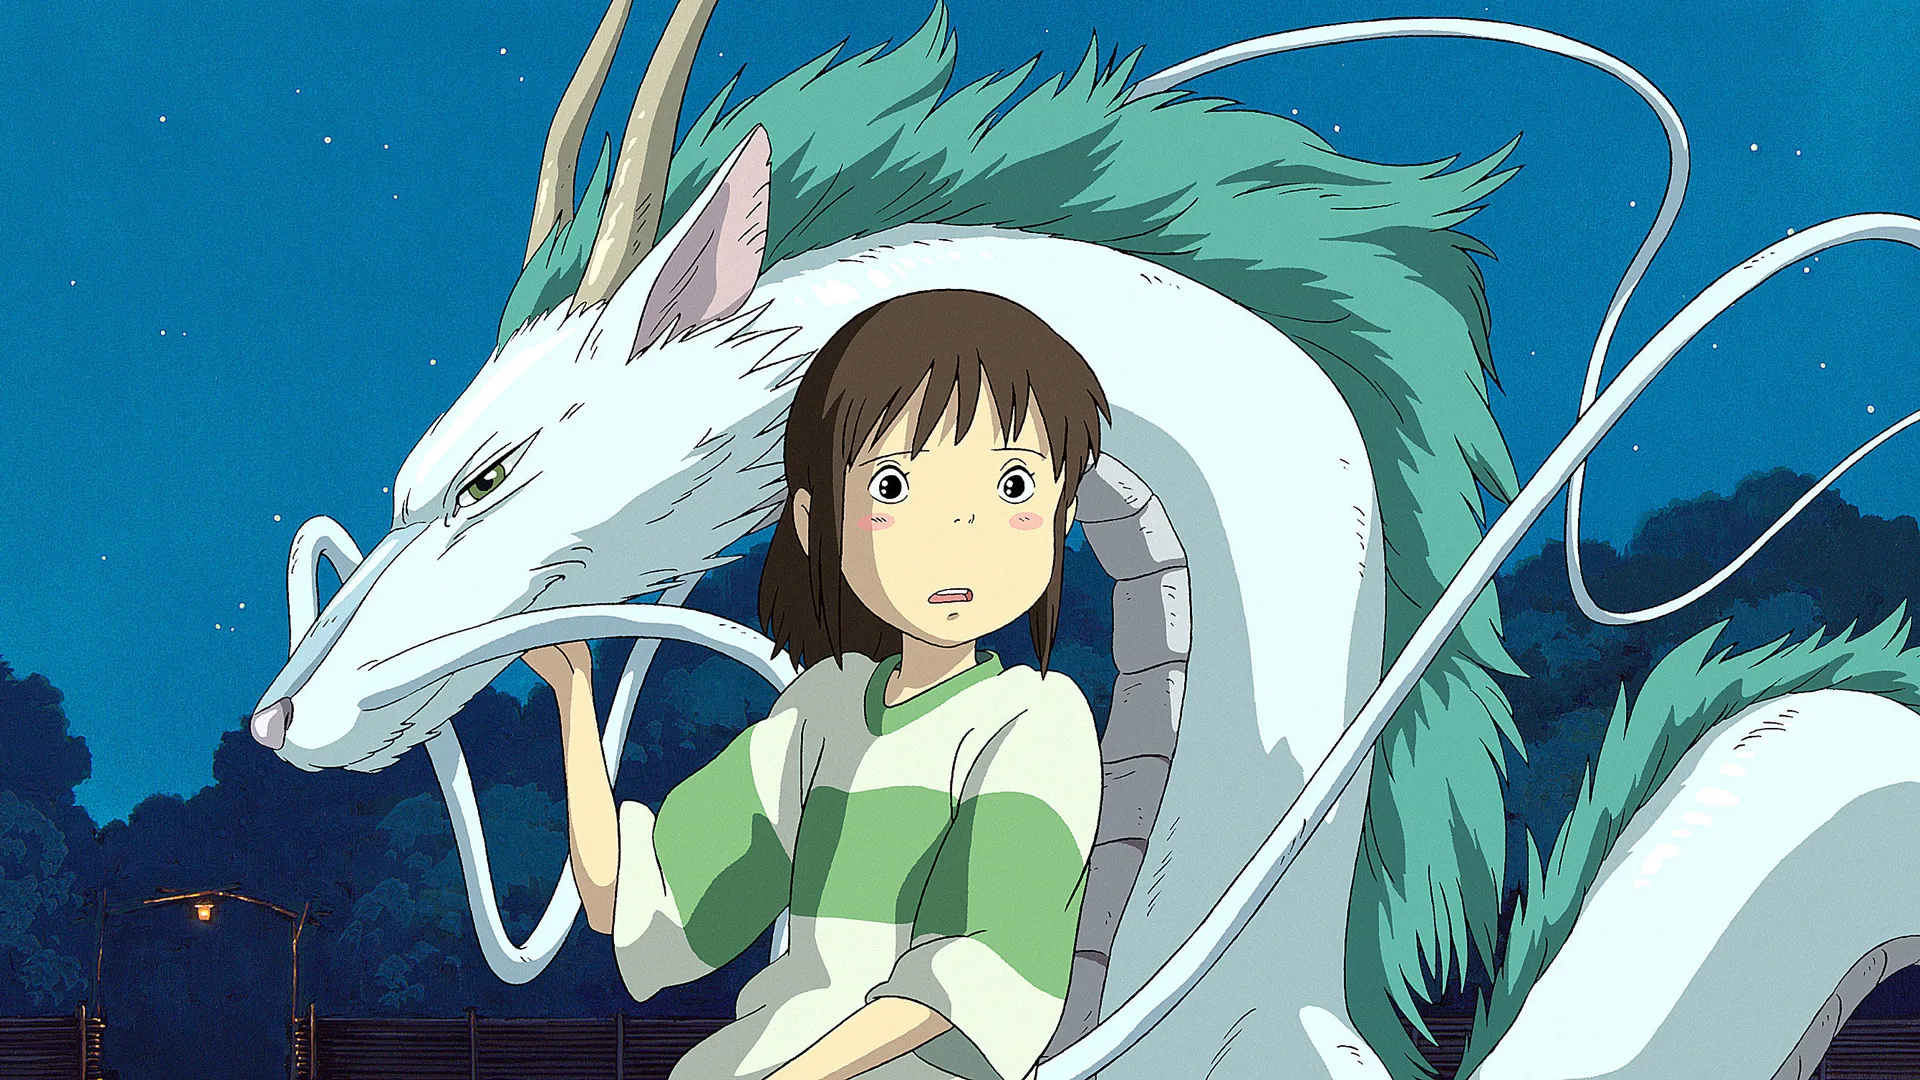 Haku and Chihiro from the Studio Ghibli film Spirited Away